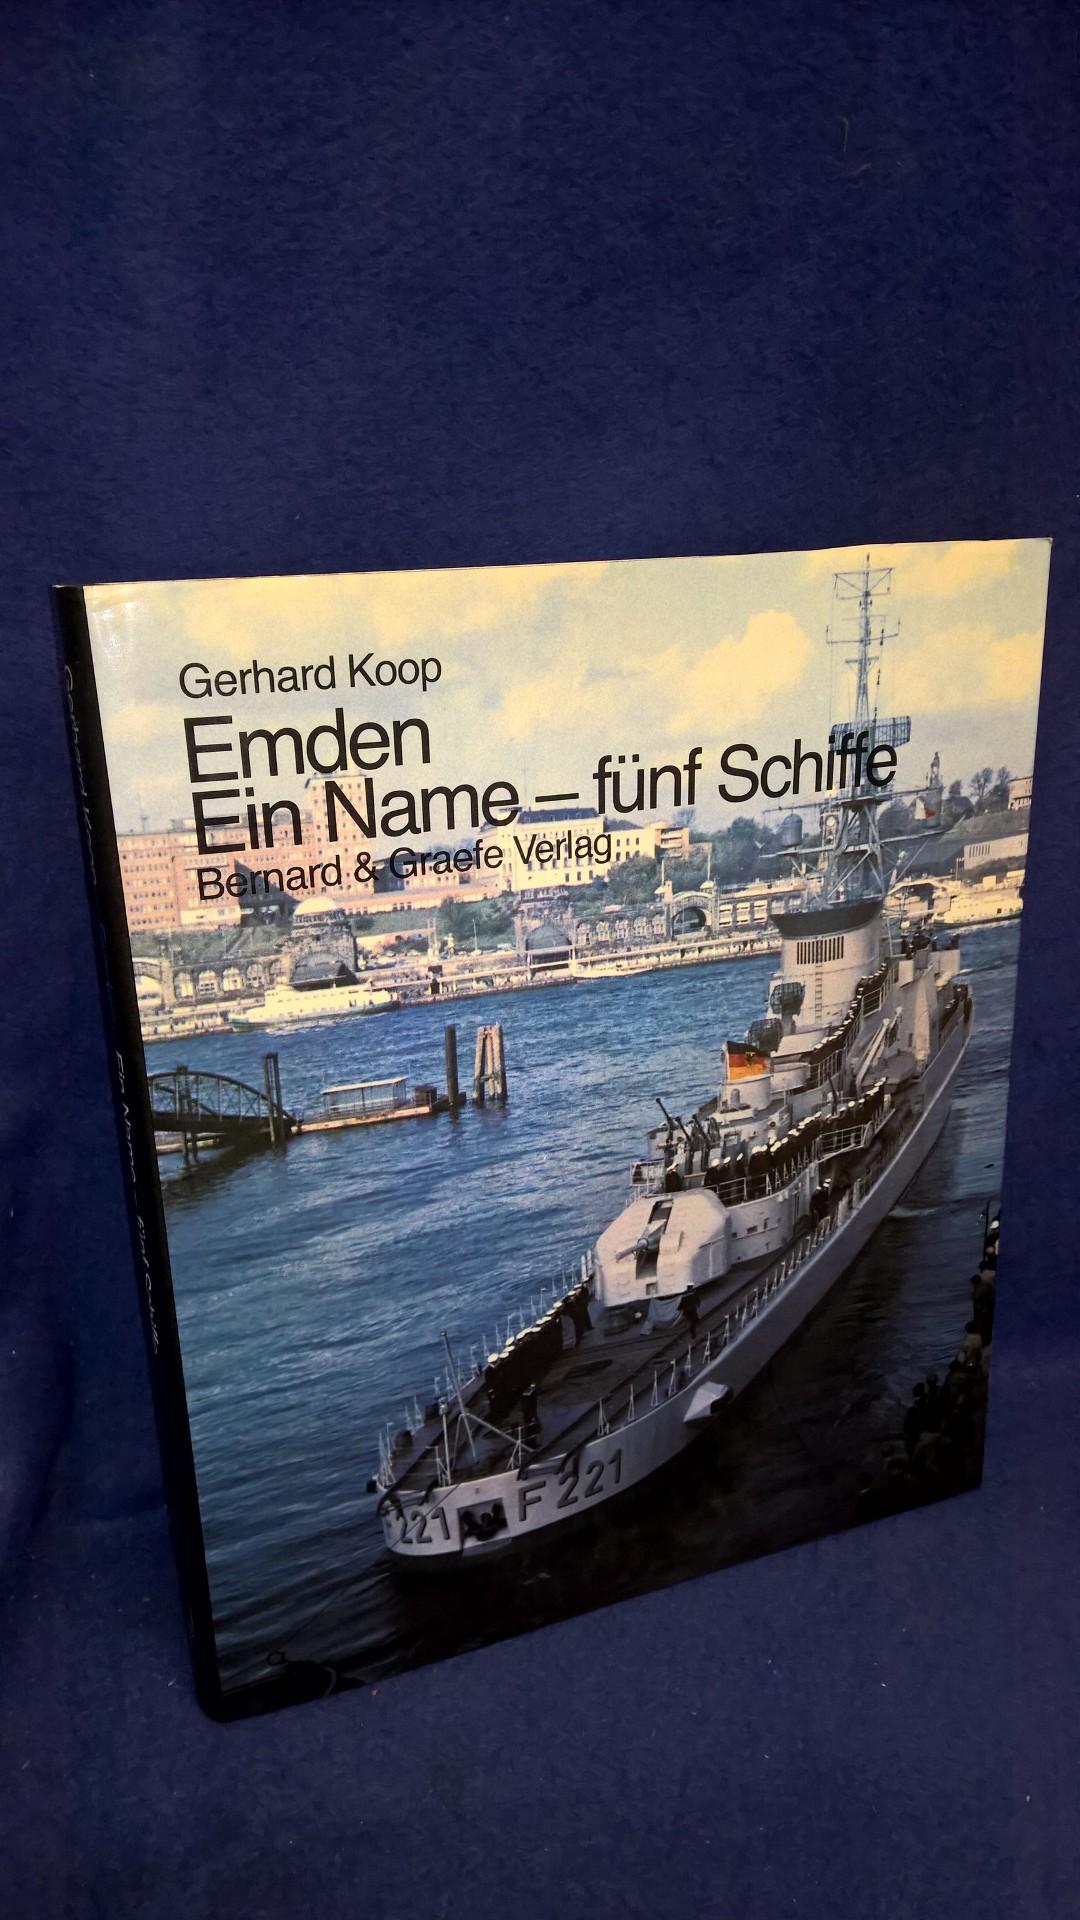 Emden - Ein Name - fünf Schiffe